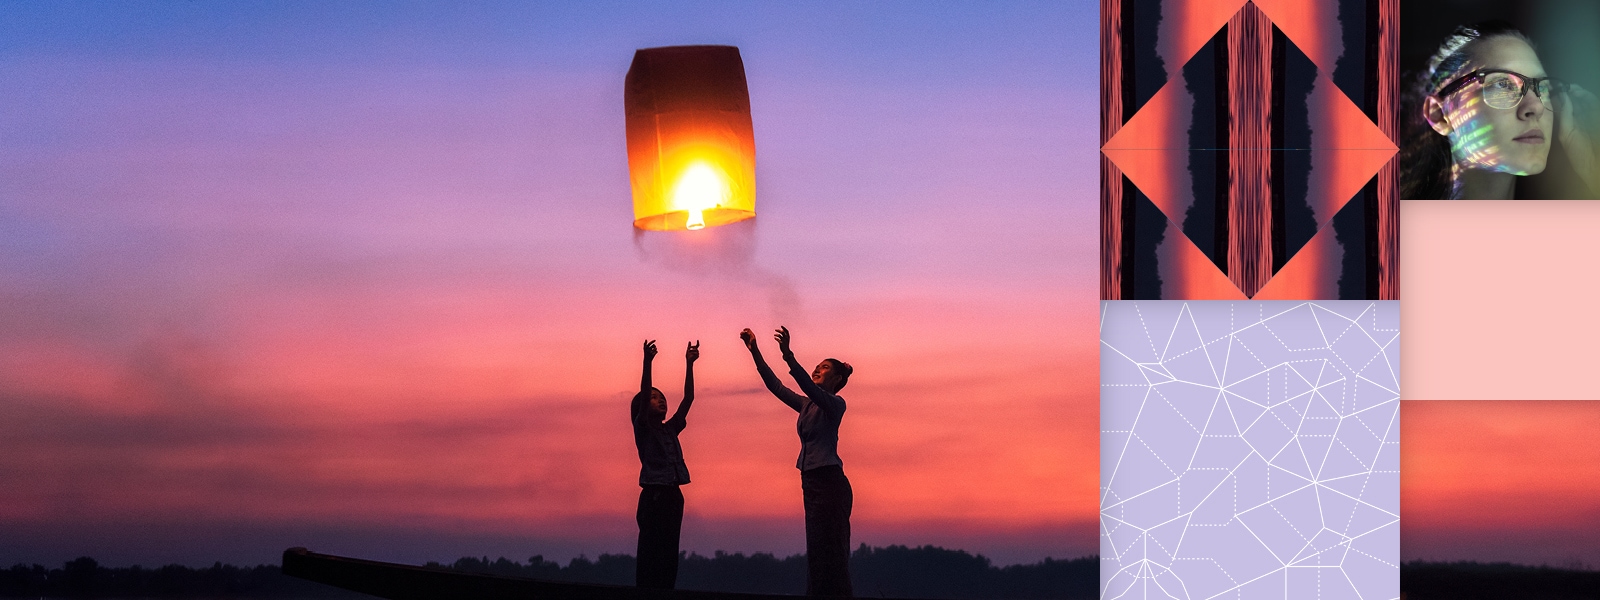 Silhueta de uma família soltando lanternas iluminadas à beira mar durante o pôr do sol, com uma sobreposição abstrata.